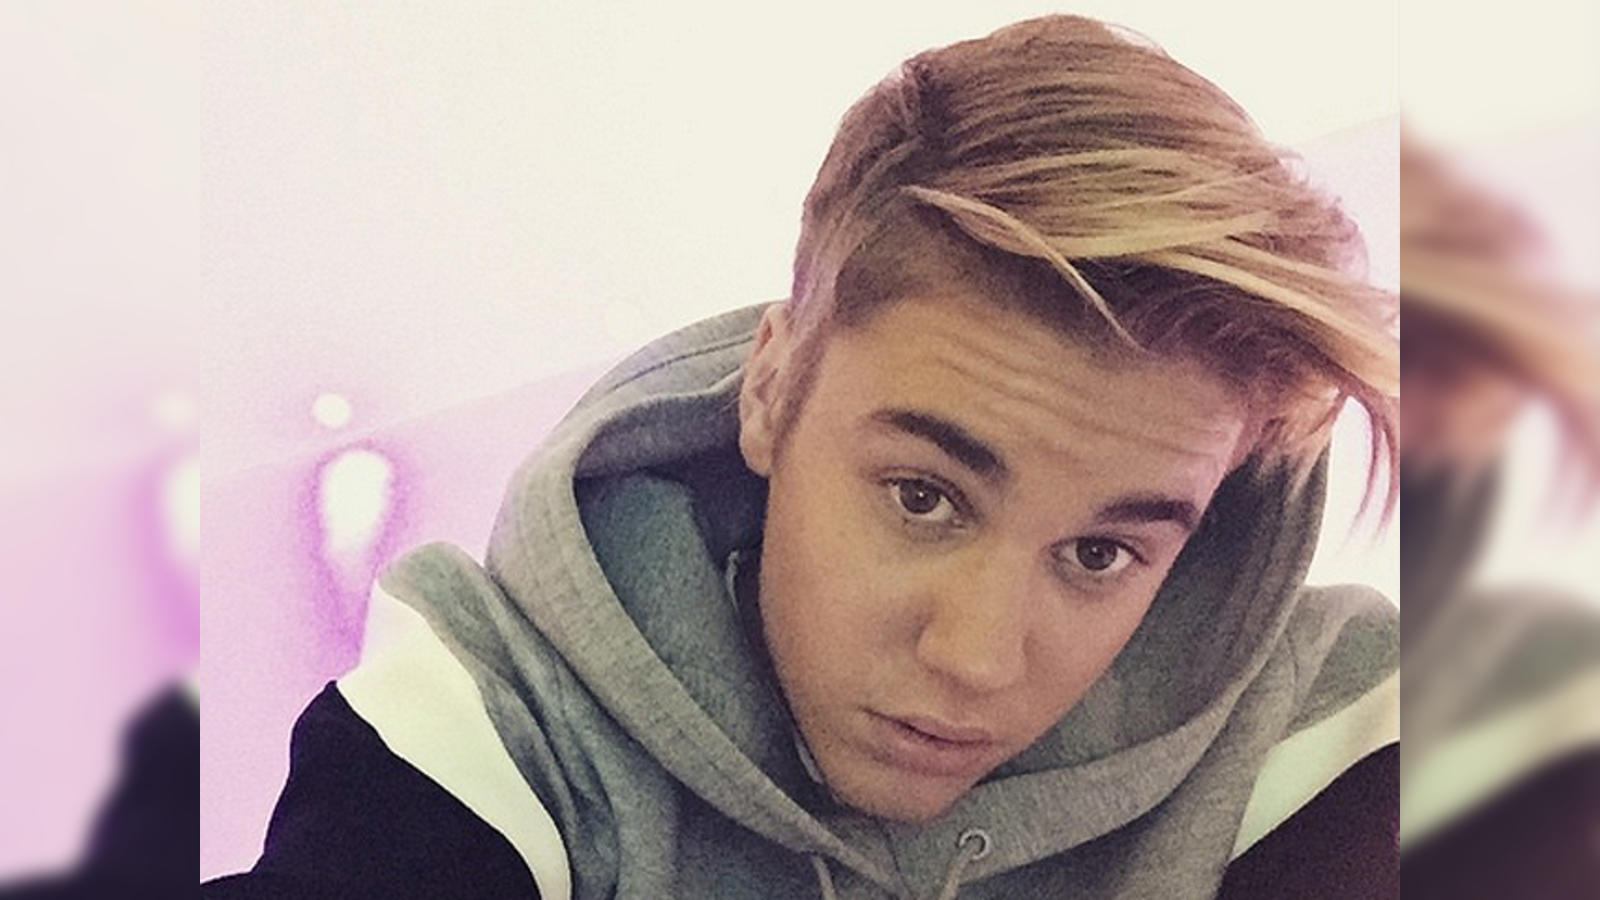 Instagram | Boy hairstyles, Justin bieber style, Celebrity hairstyles